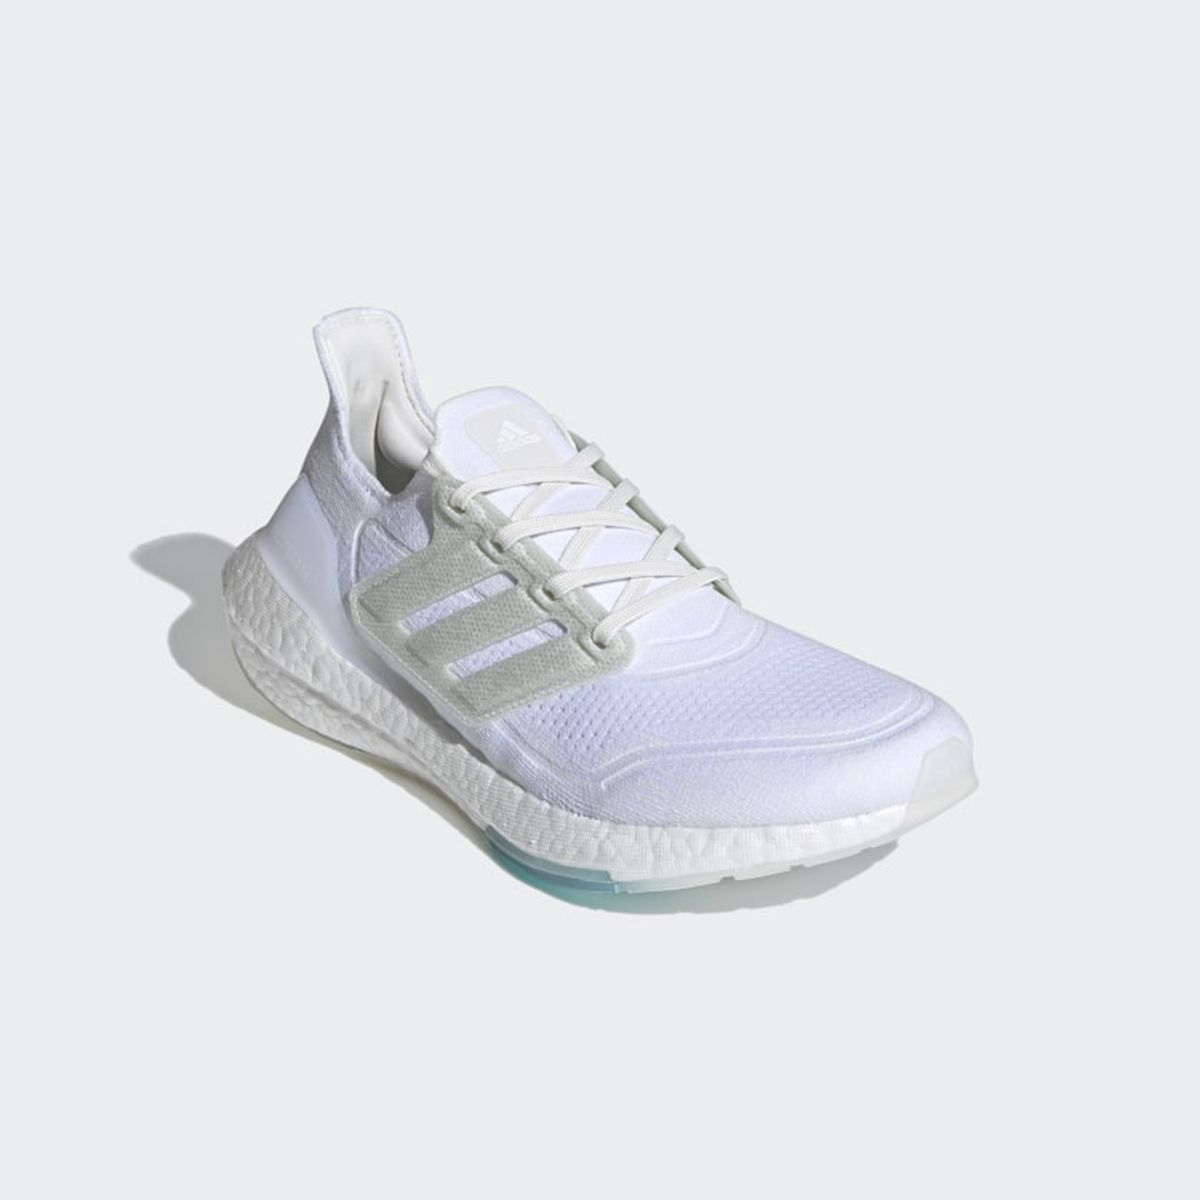 Adidas ultraboost 21 x Parley: zapatilla de running sostenible طريقة رفع الصور على رابط